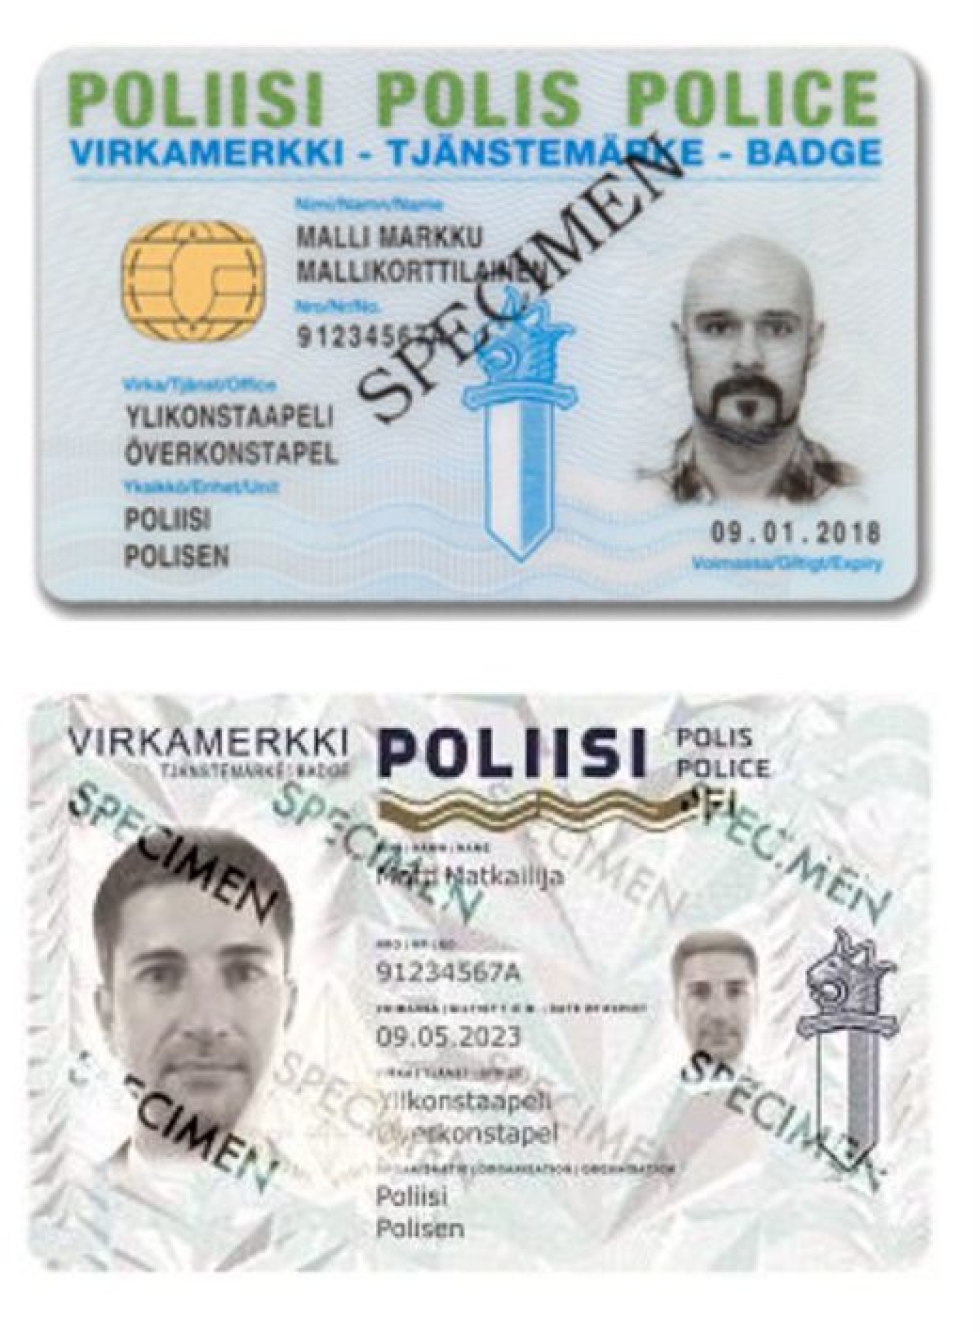 Uusissa korteissa (alla) viranomaisen ja kortin nimi ovat ruotsiksi huomattavasti pienemmällä kirjasinkoolla kuin suomeksi. LEHTIKUVA/poliisi